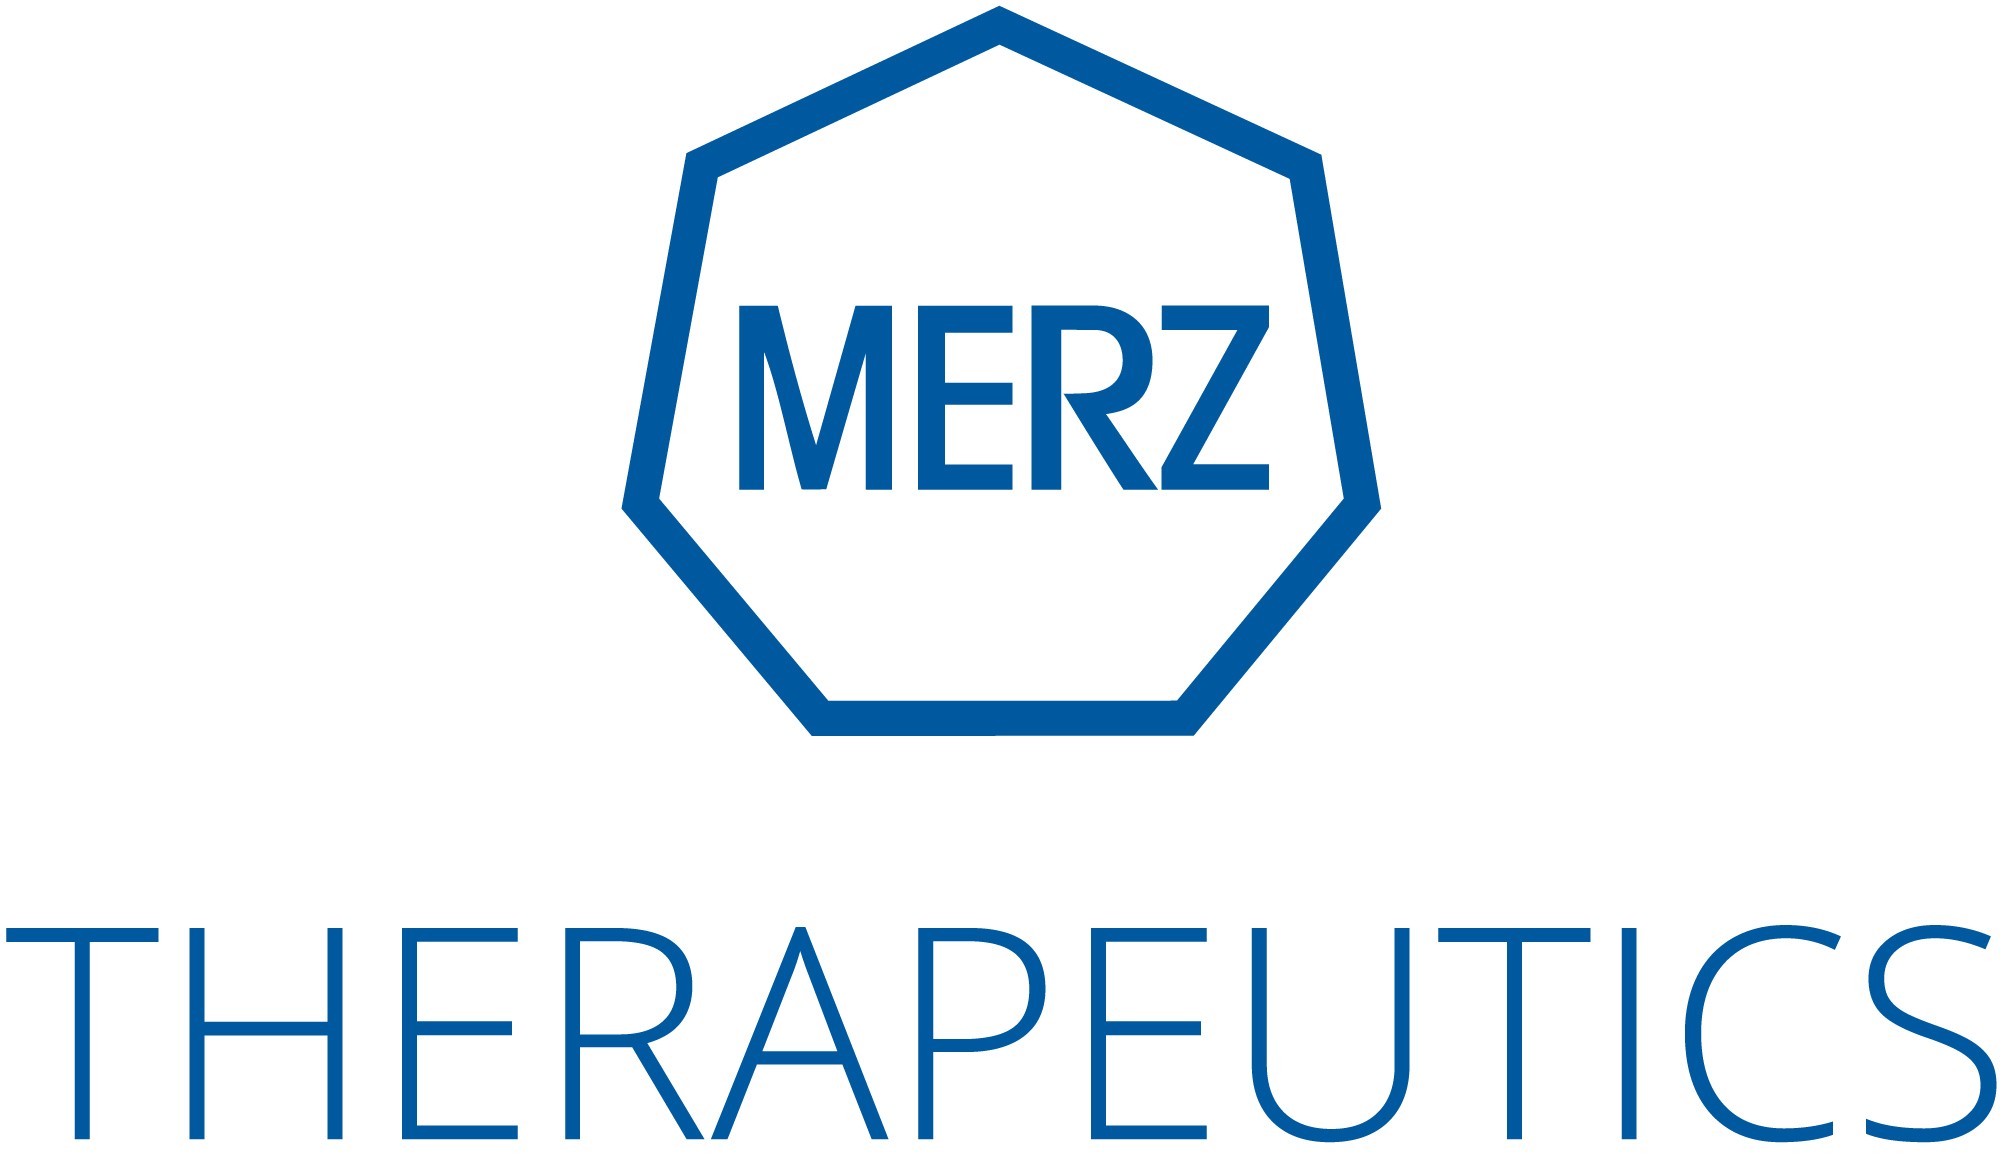 Merz Therapeutics и ACINO подписали дистрибьюторское соглашение